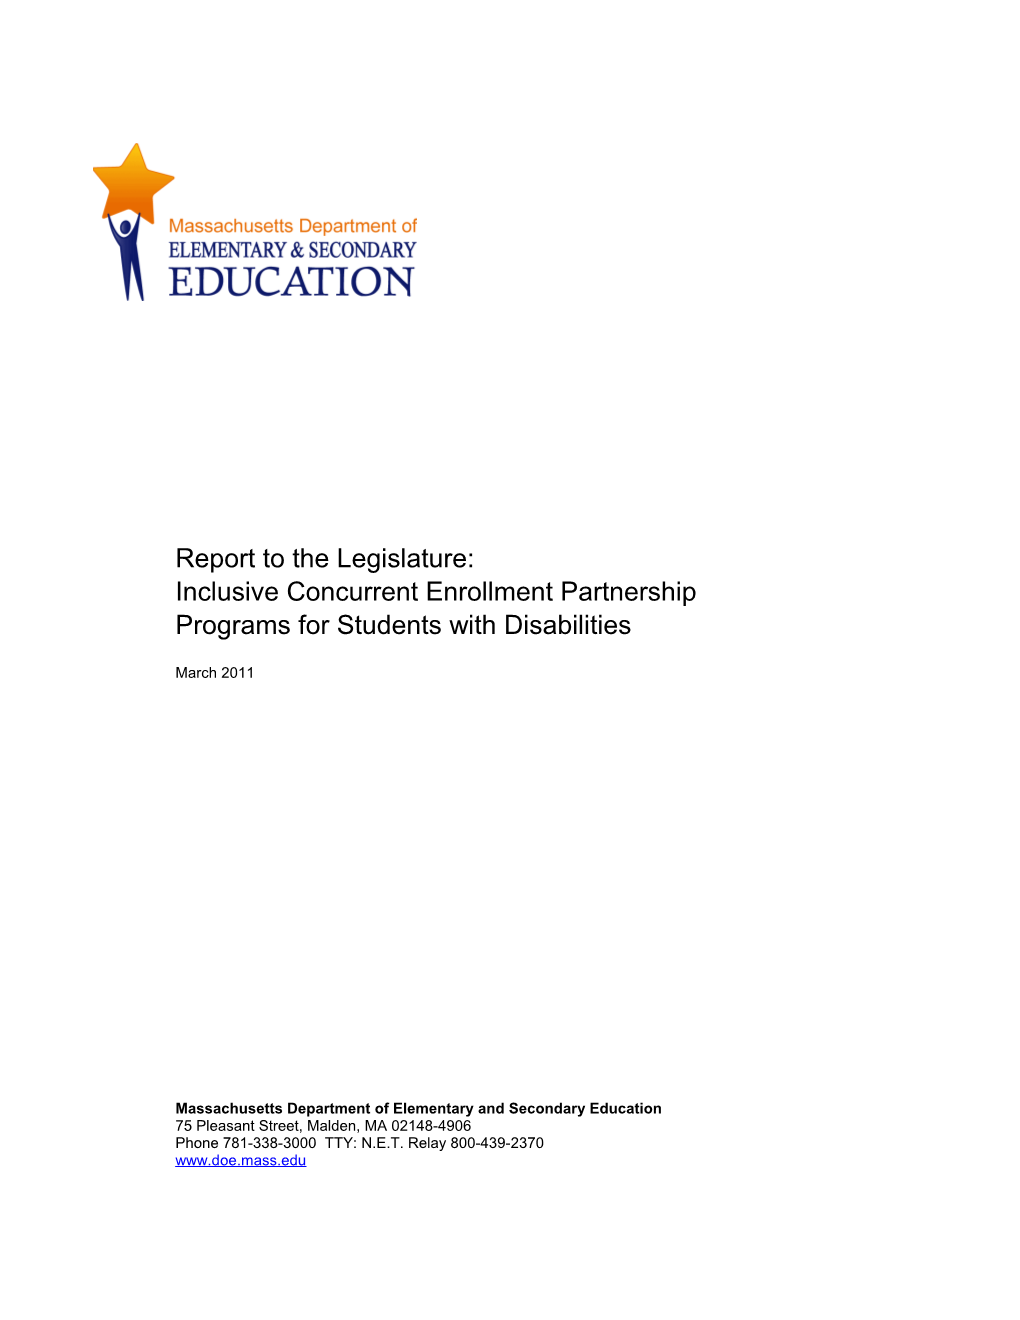 Inclusive Concurrent Enrollment FY2011 Report